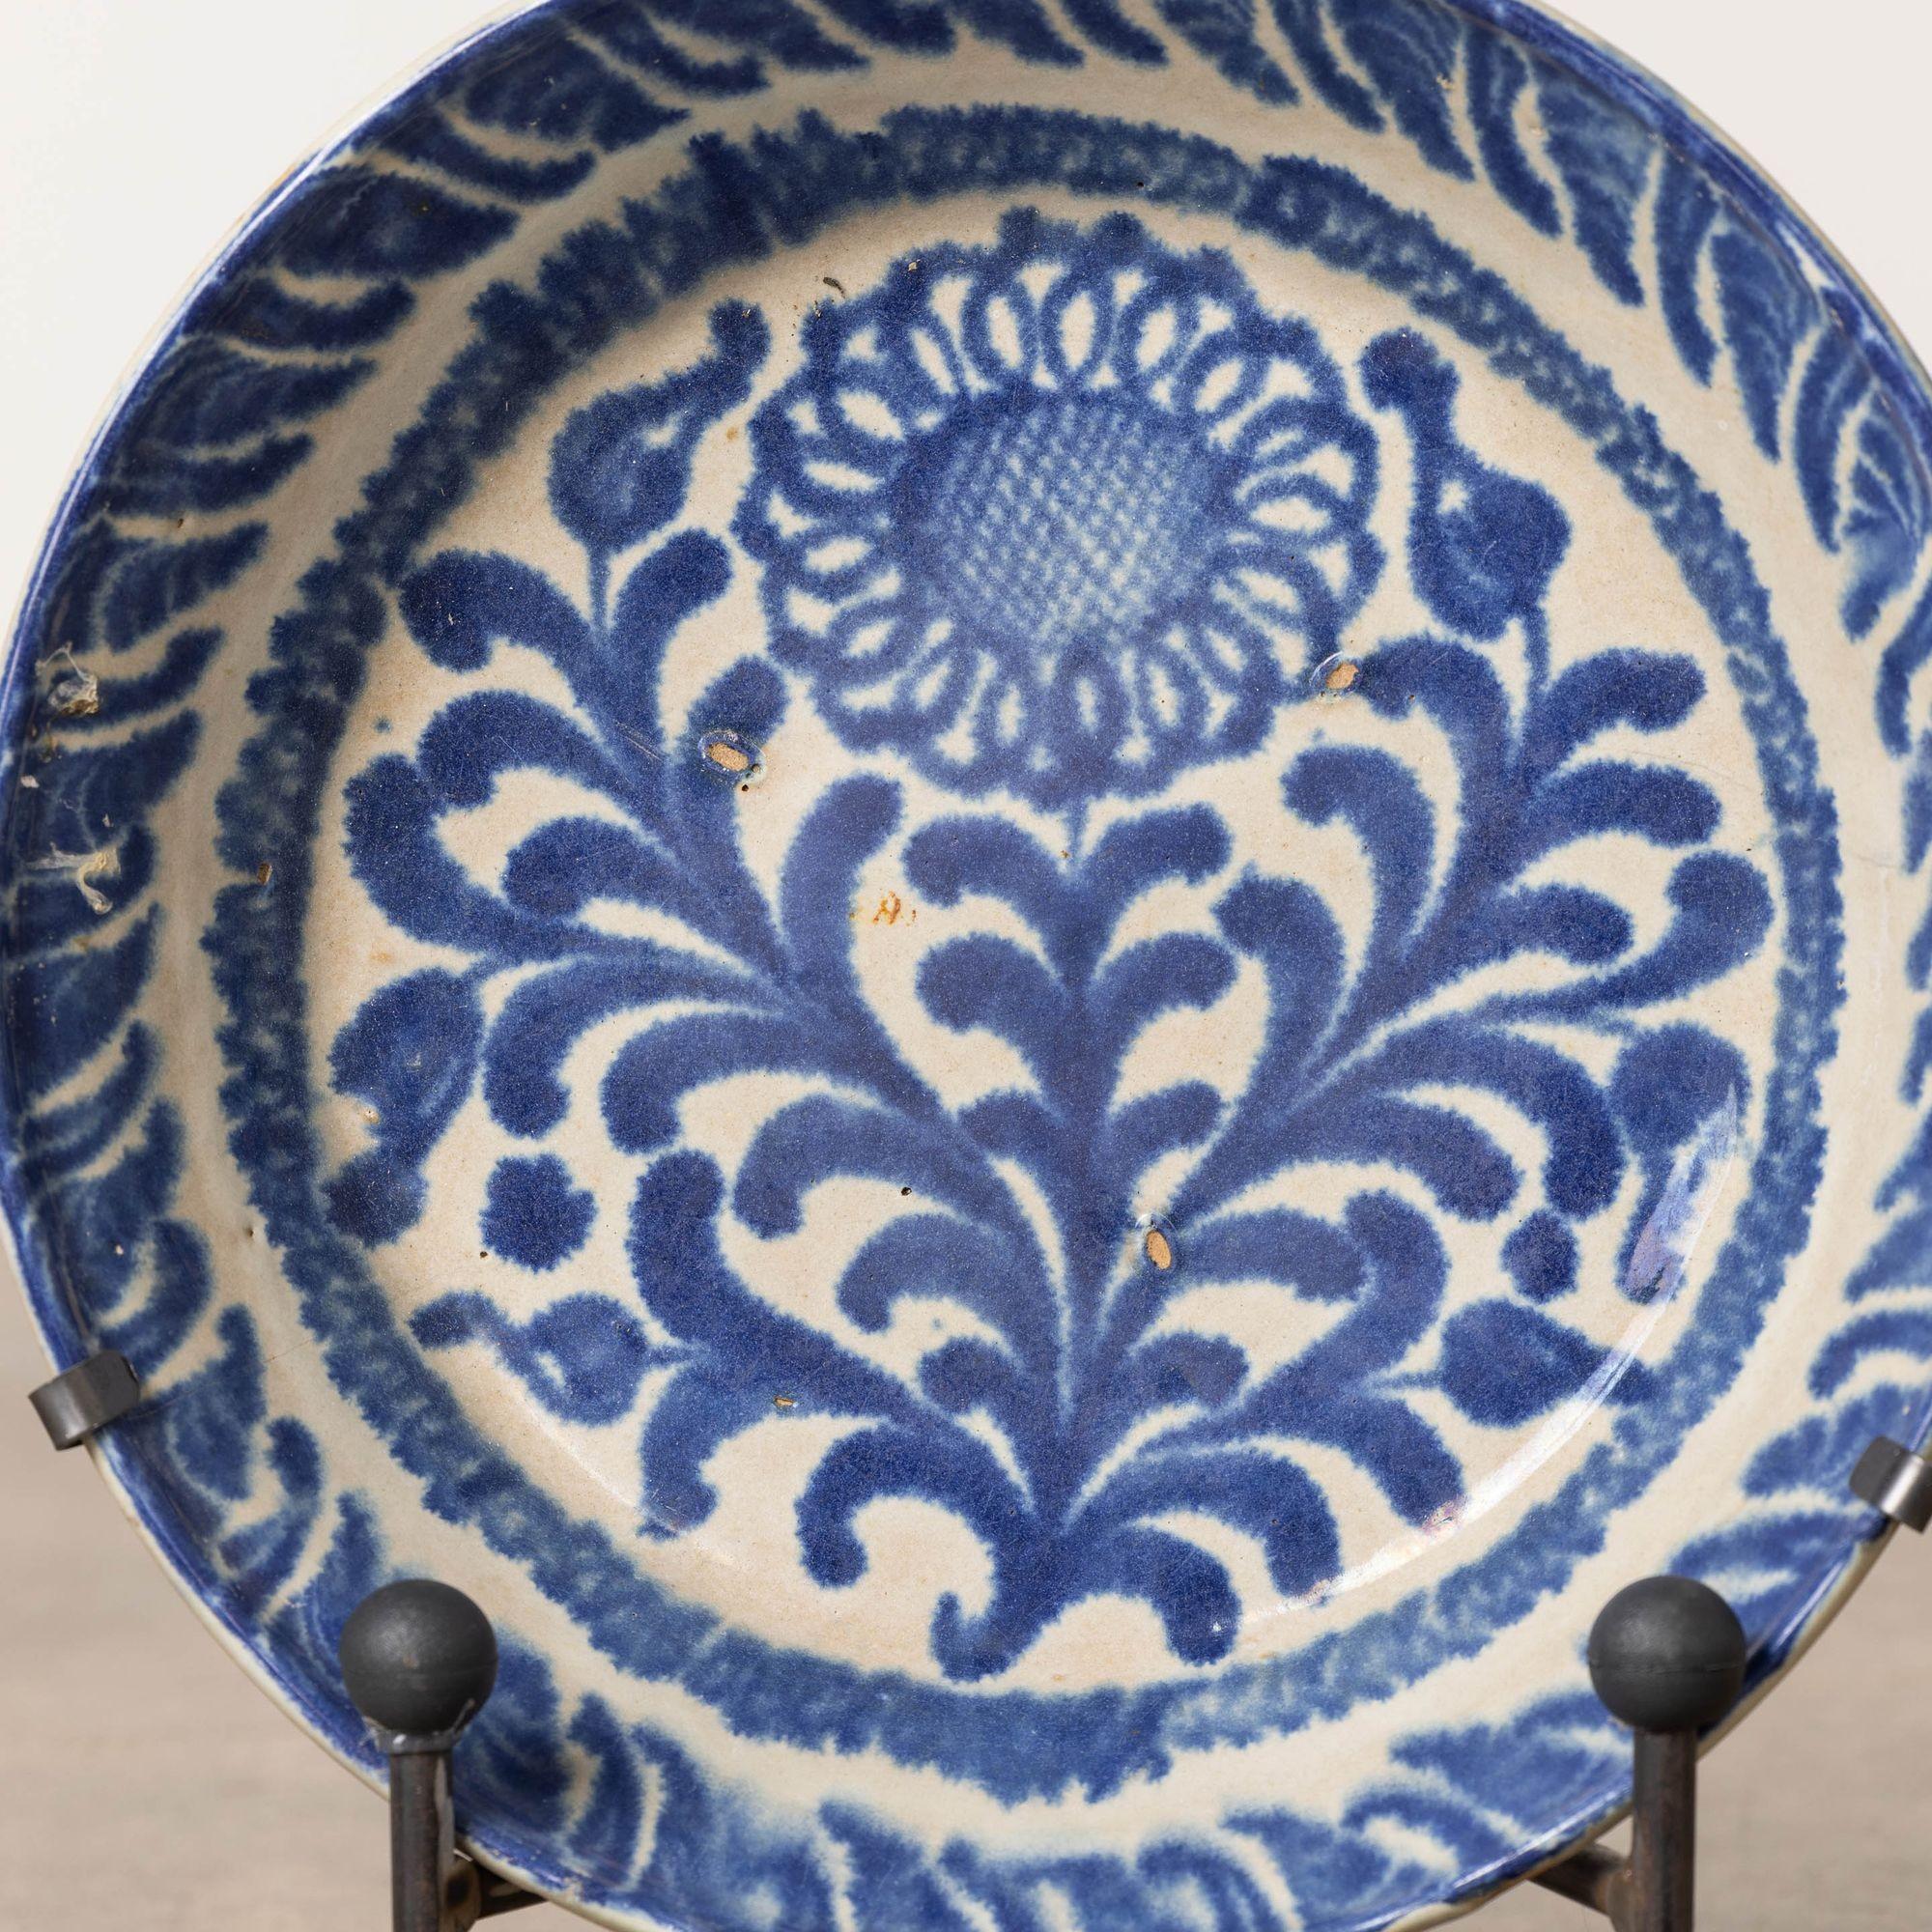 Schale aus Steingut aus Granada, Spanien, 19. Jh., blau bemalt, milchweiße Glasur. Diese tiefe Schale ist mit einem handgemalten Blumen- und Blattmotiv auf dem Schalenboden und dekorativen Seiten versehen. Verkauft mit einem handgeschmiedeten